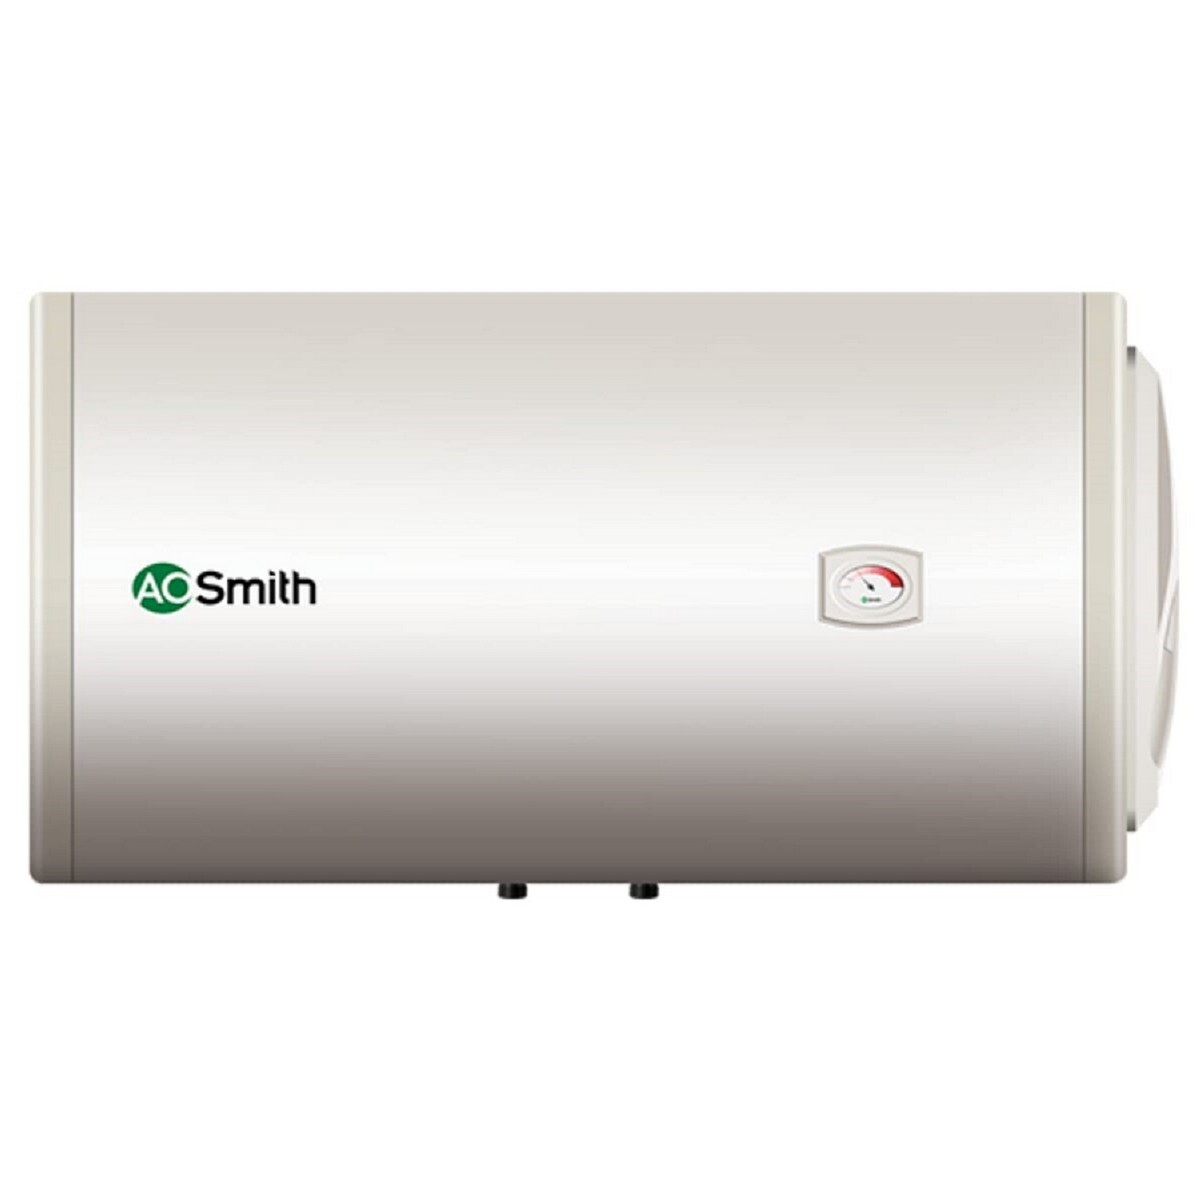 AO Smith Water Heater HAS-100L